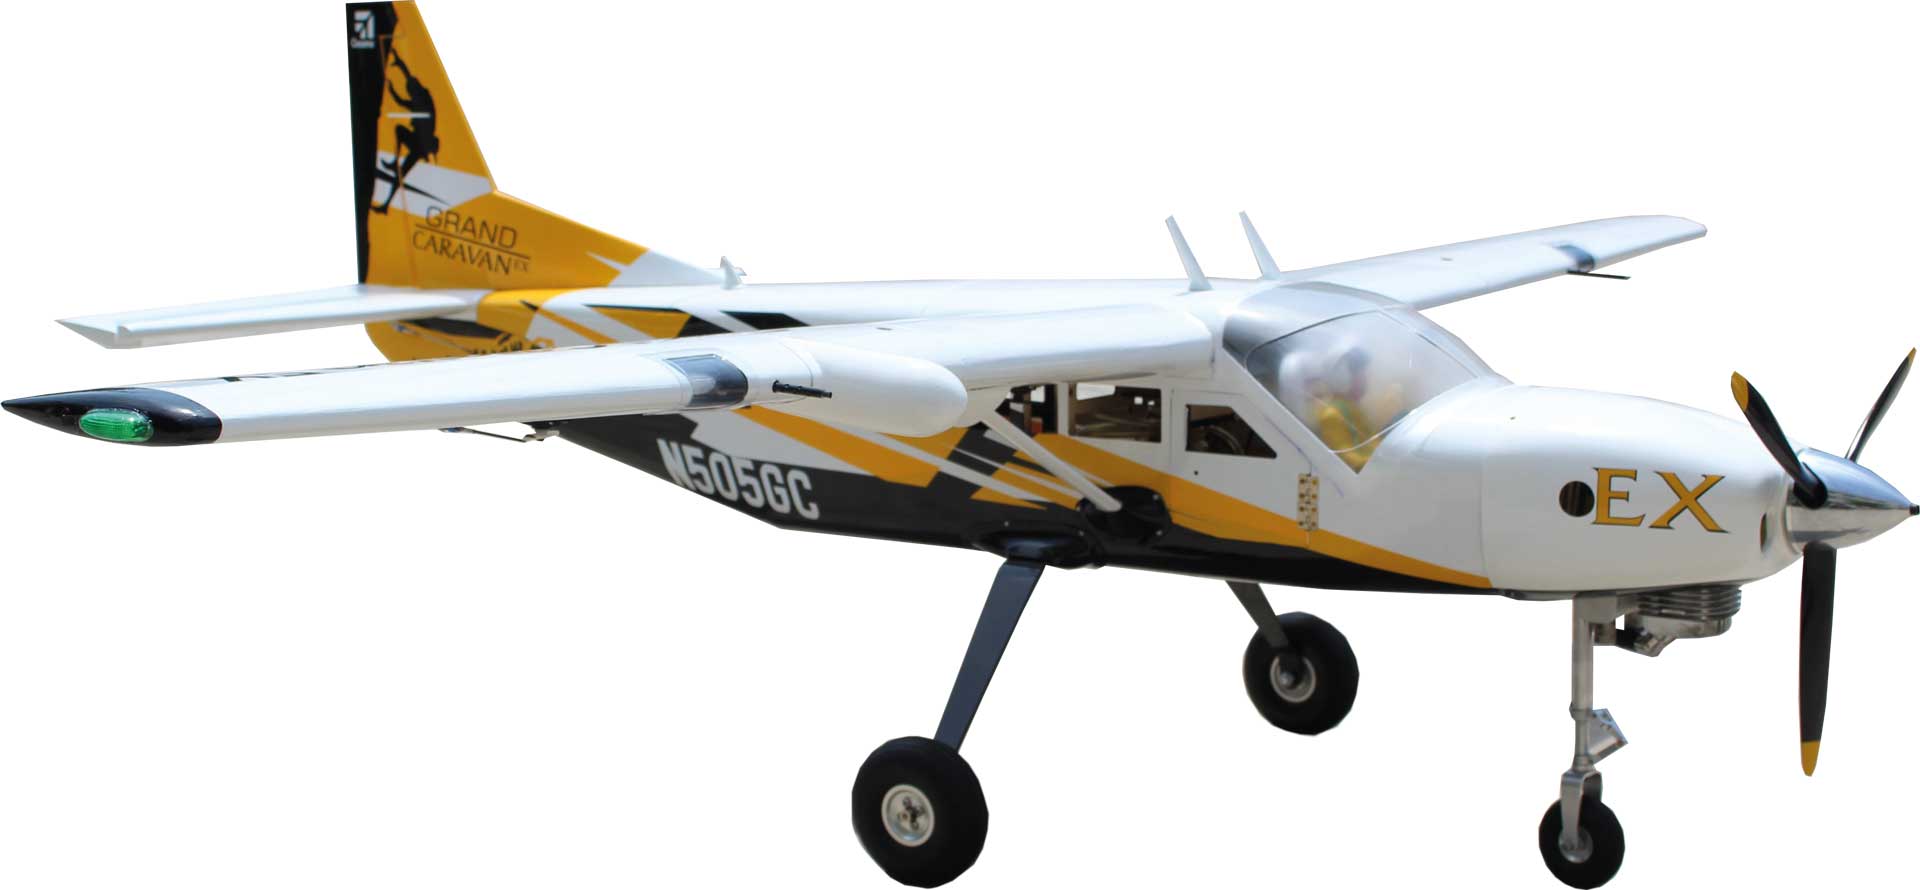 Seagull Models ( SG-Models ) Cessna 208 Grand Caravan EX 85" 45cc schwarz/gelb